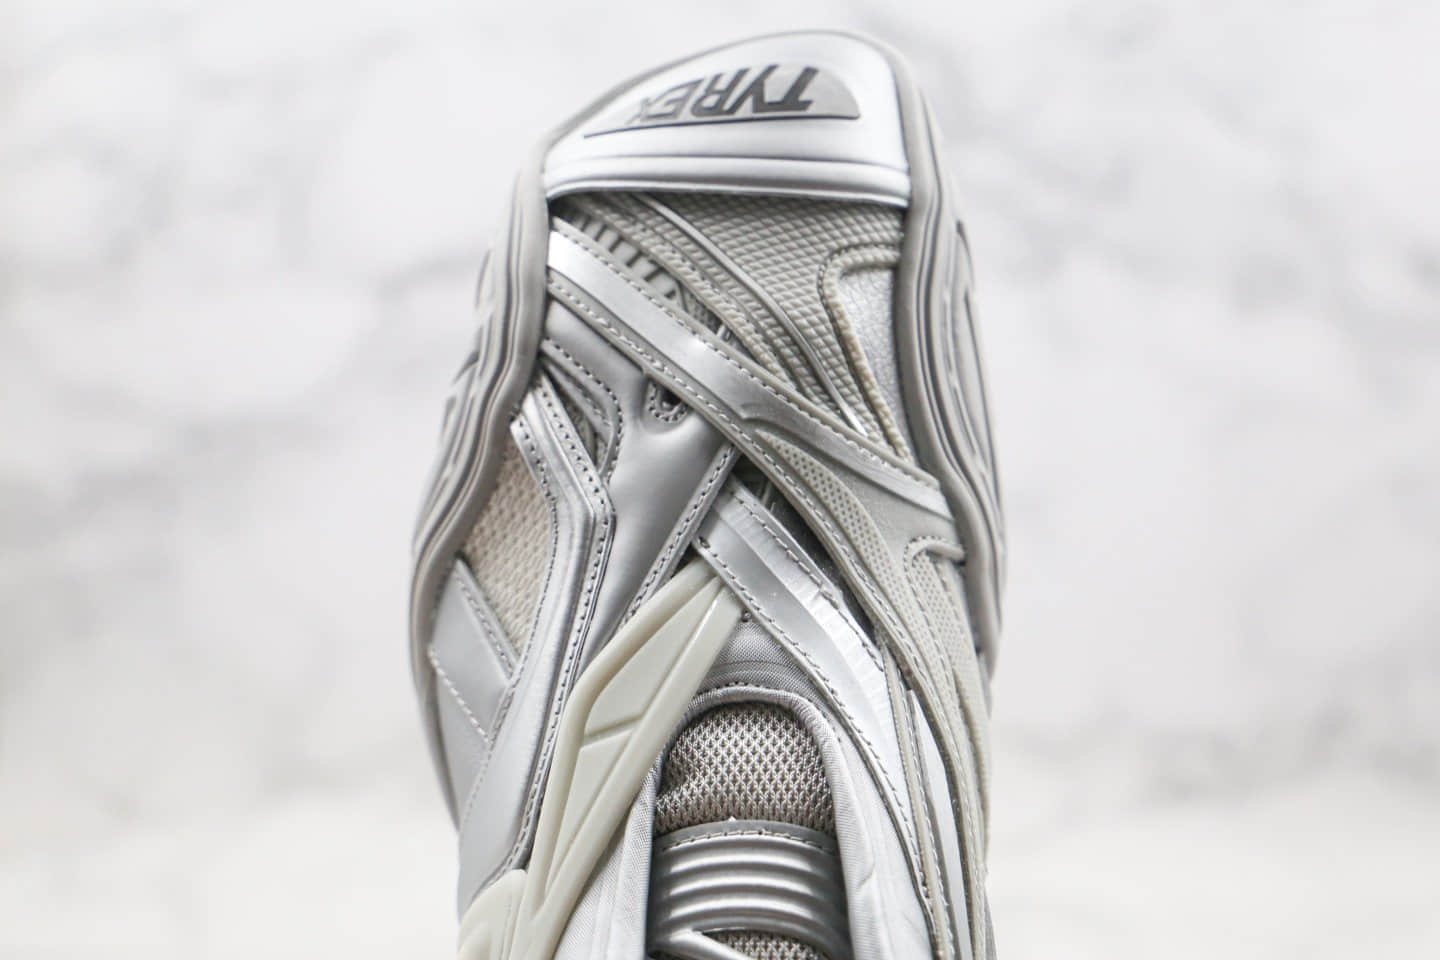 巴黎世家Balenciaga tyrex Sneaker Bicol Or Rubber Mesh Not Wash Black纯原版本复古老爹鞋5.0系列银色原档案数据开发原盒配件齐全